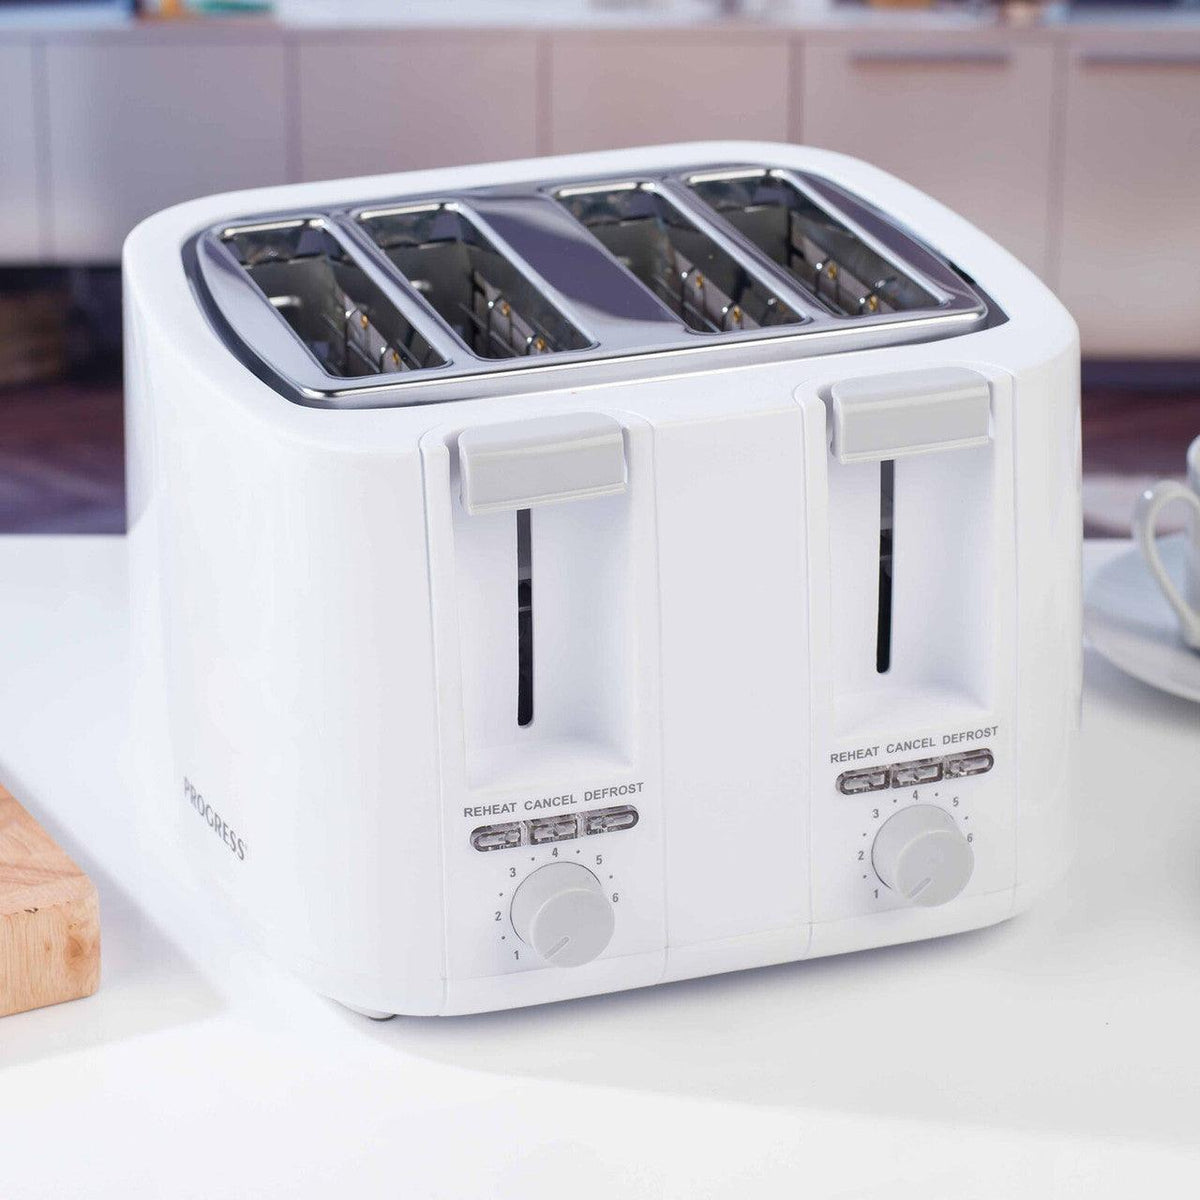 Progress White 4 Slice Toaster | 1500W